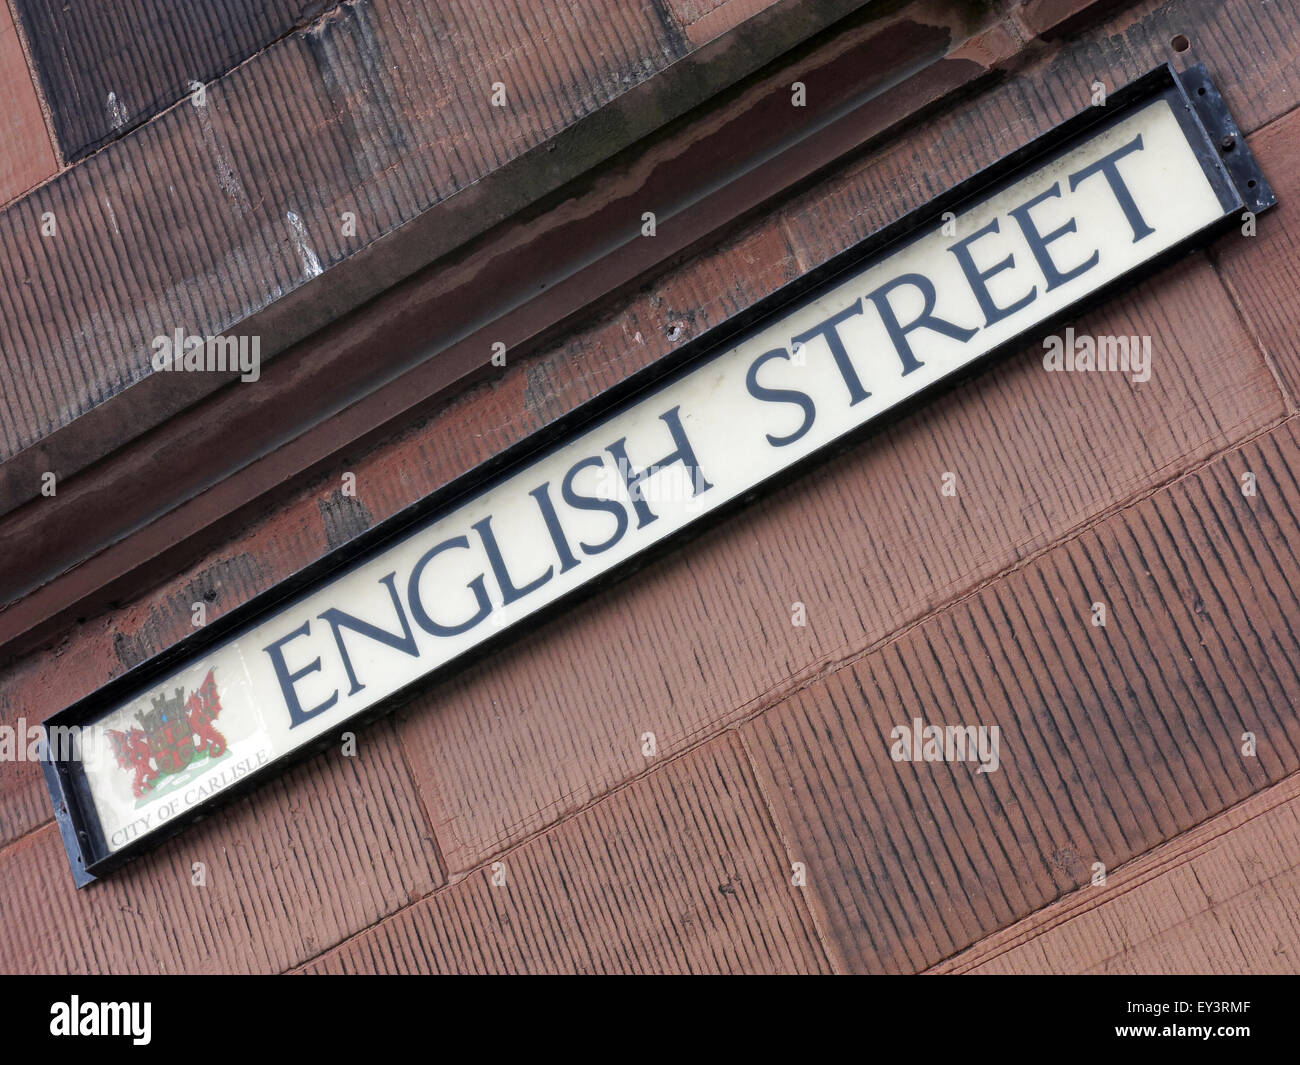 Strade in Carlisle denominato INGLESE O SCOZZESE, Cumbria, Regno Unito - Paese di frontiera Foto Stock